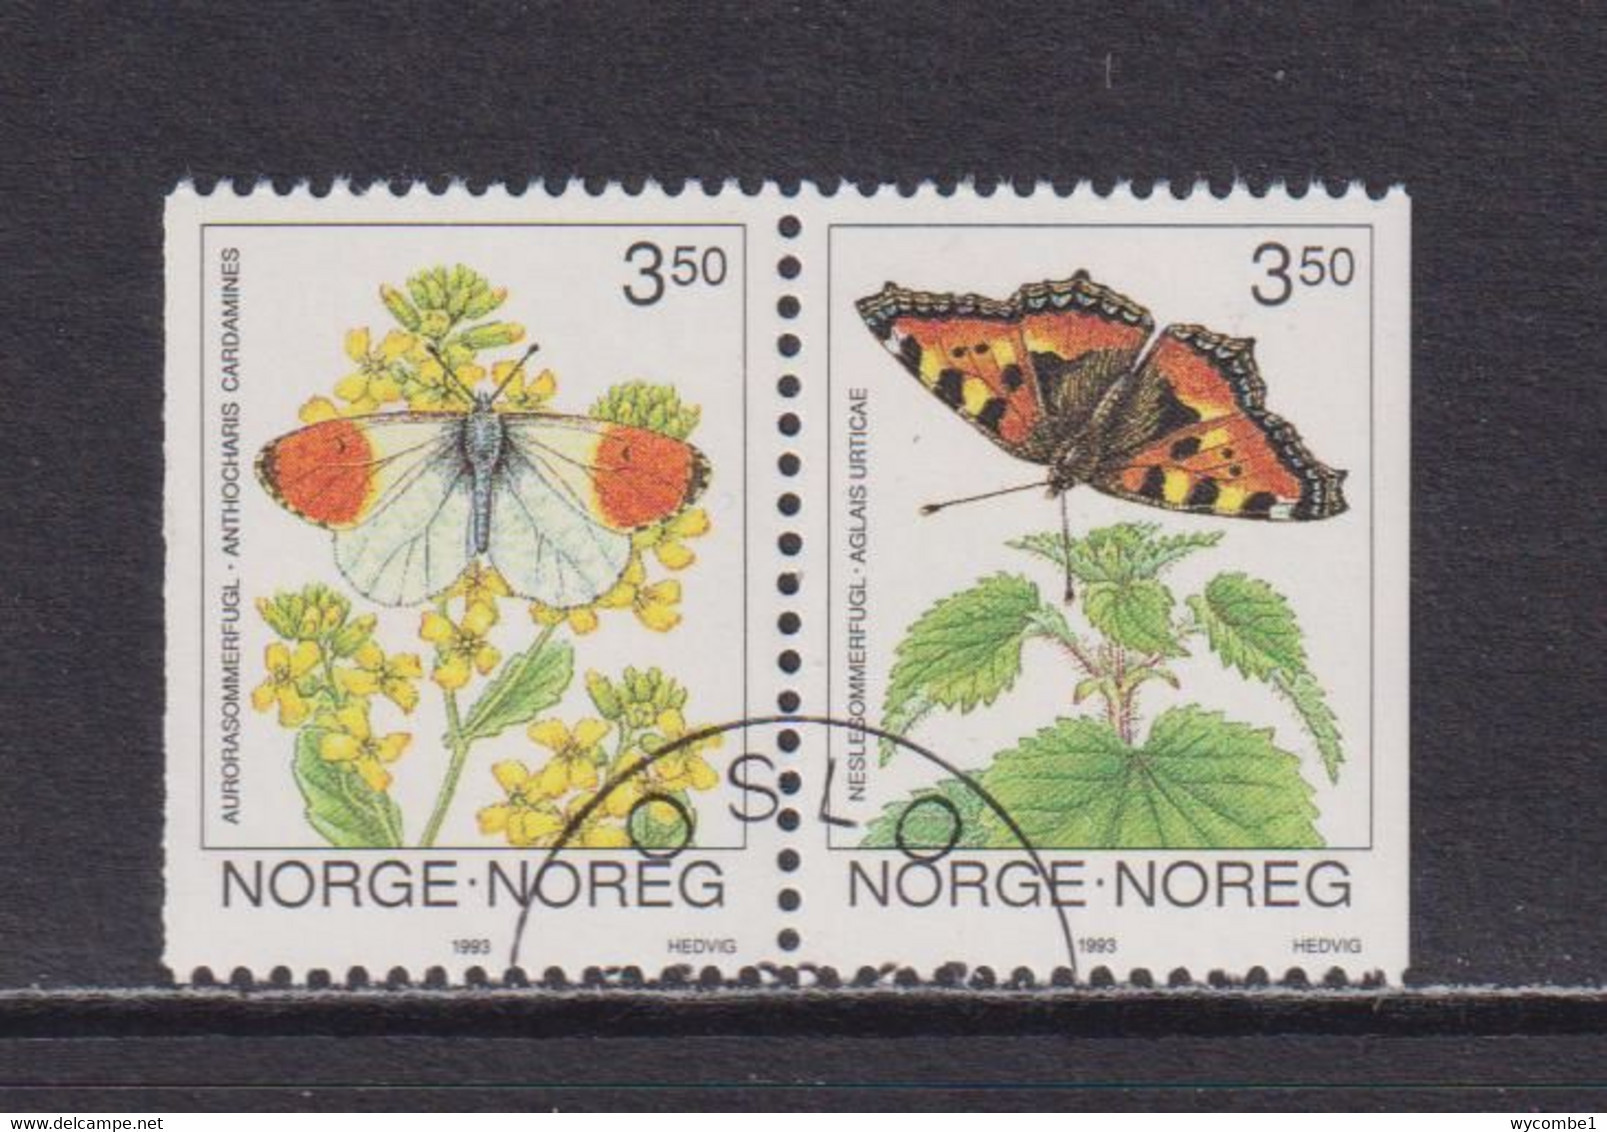 NORWAY - 1993 Butterflies Booklet Pair Used As Scan - Gebraucht